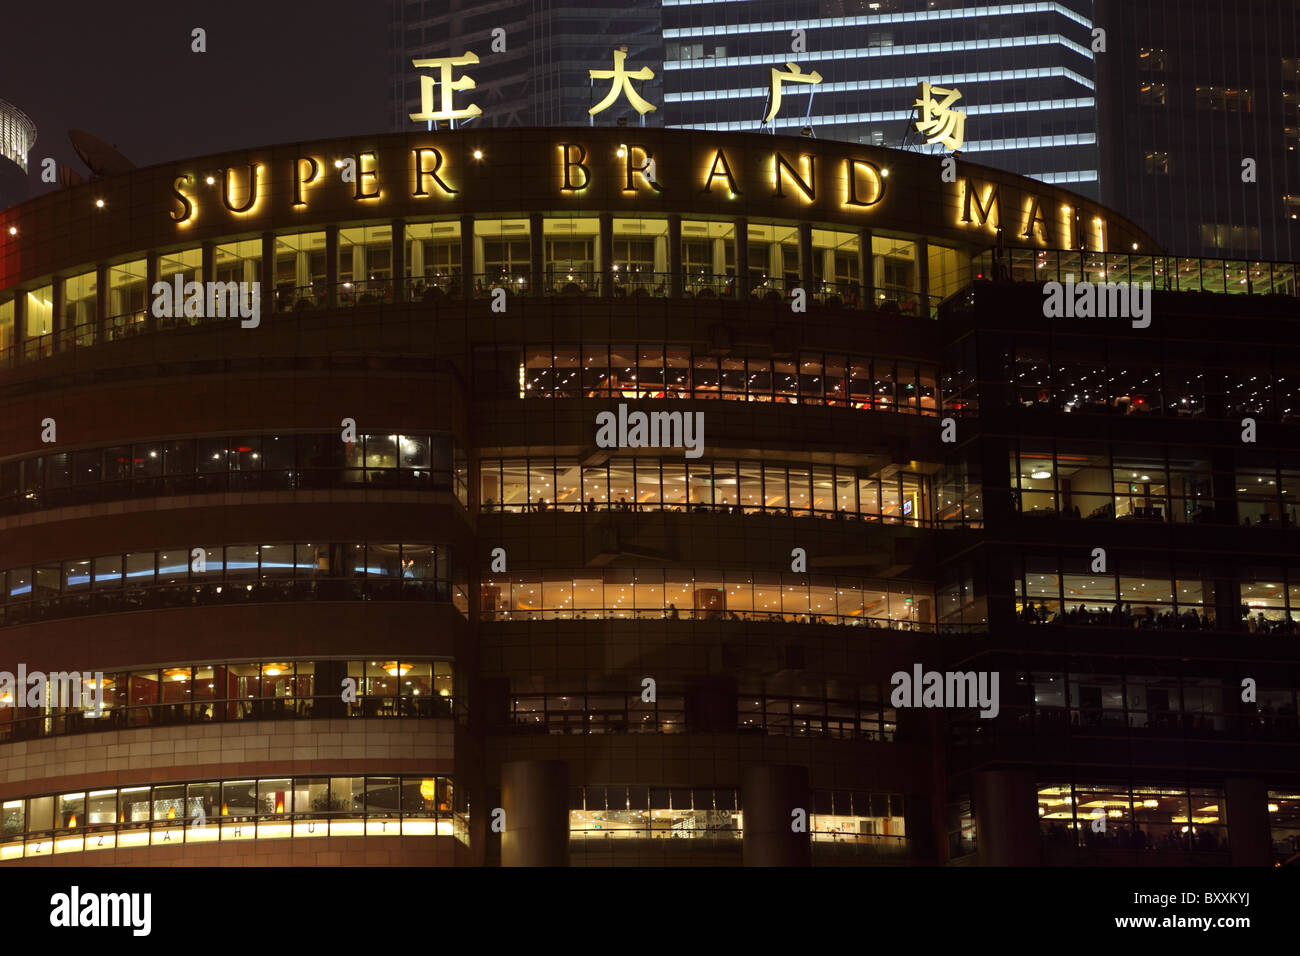 Du centre commercial Super Brand la nuit, Pudong Shanghai Chine. Banque D'Images